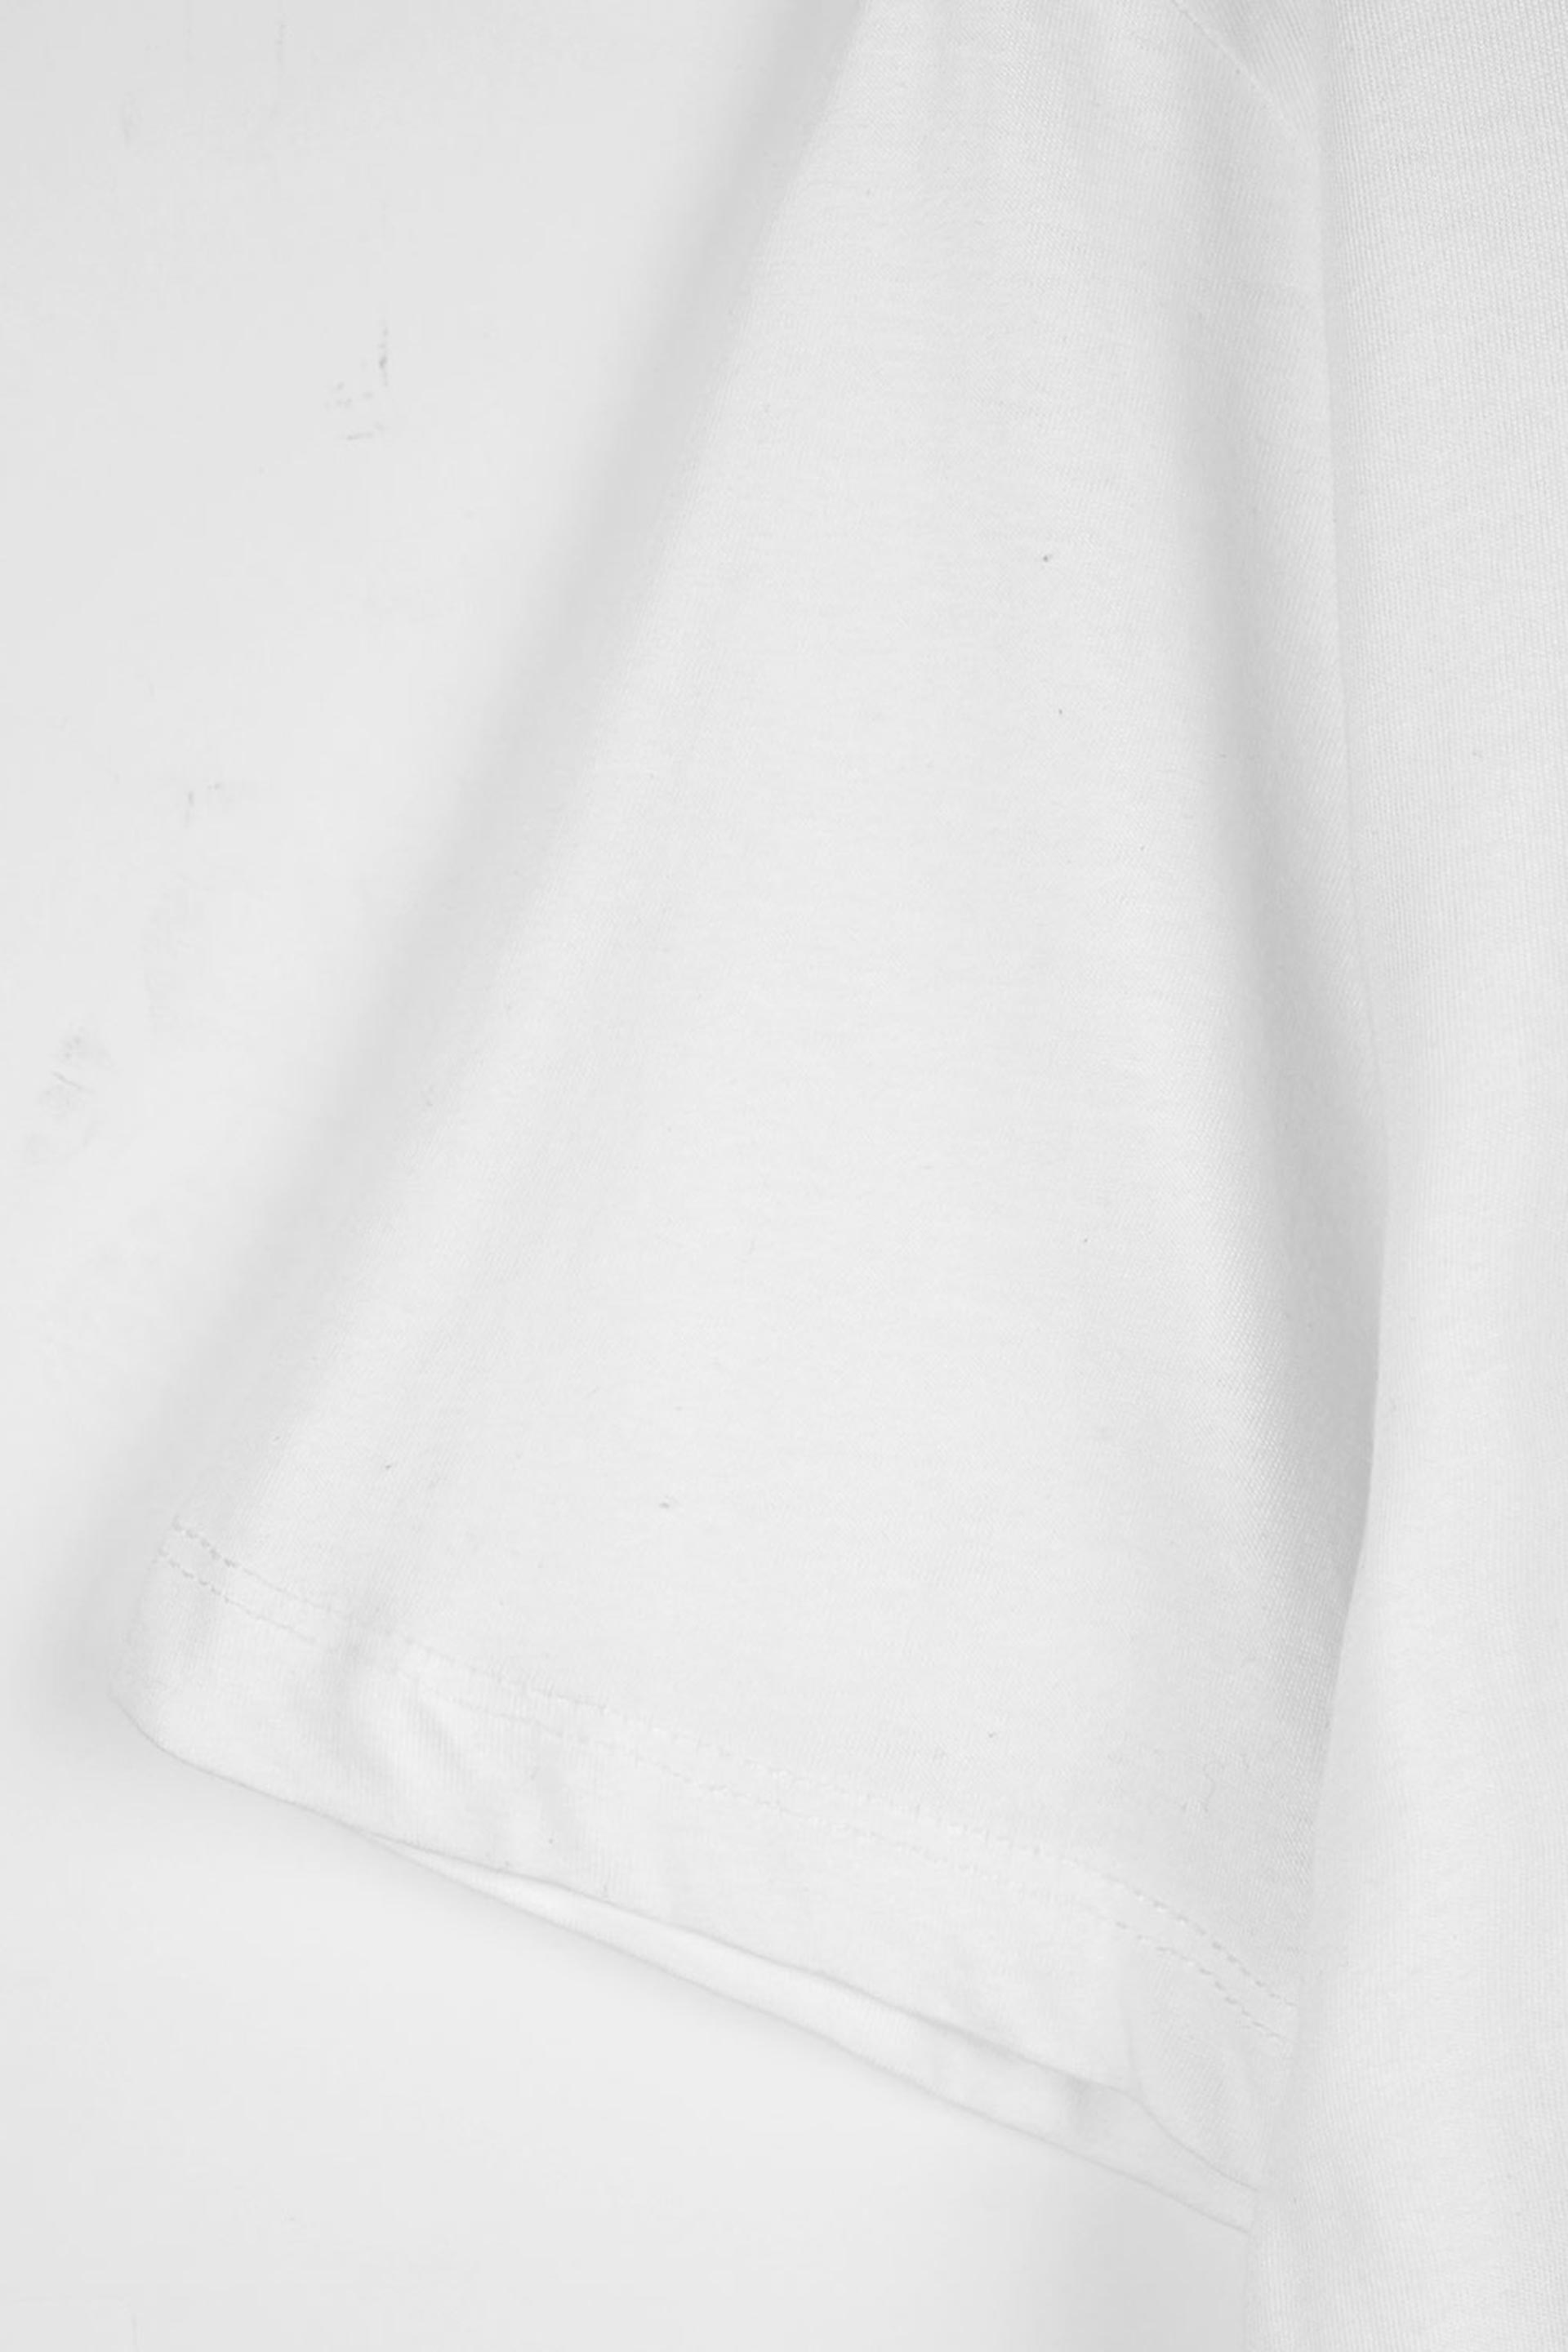 Graphic White T-Shirt 001877